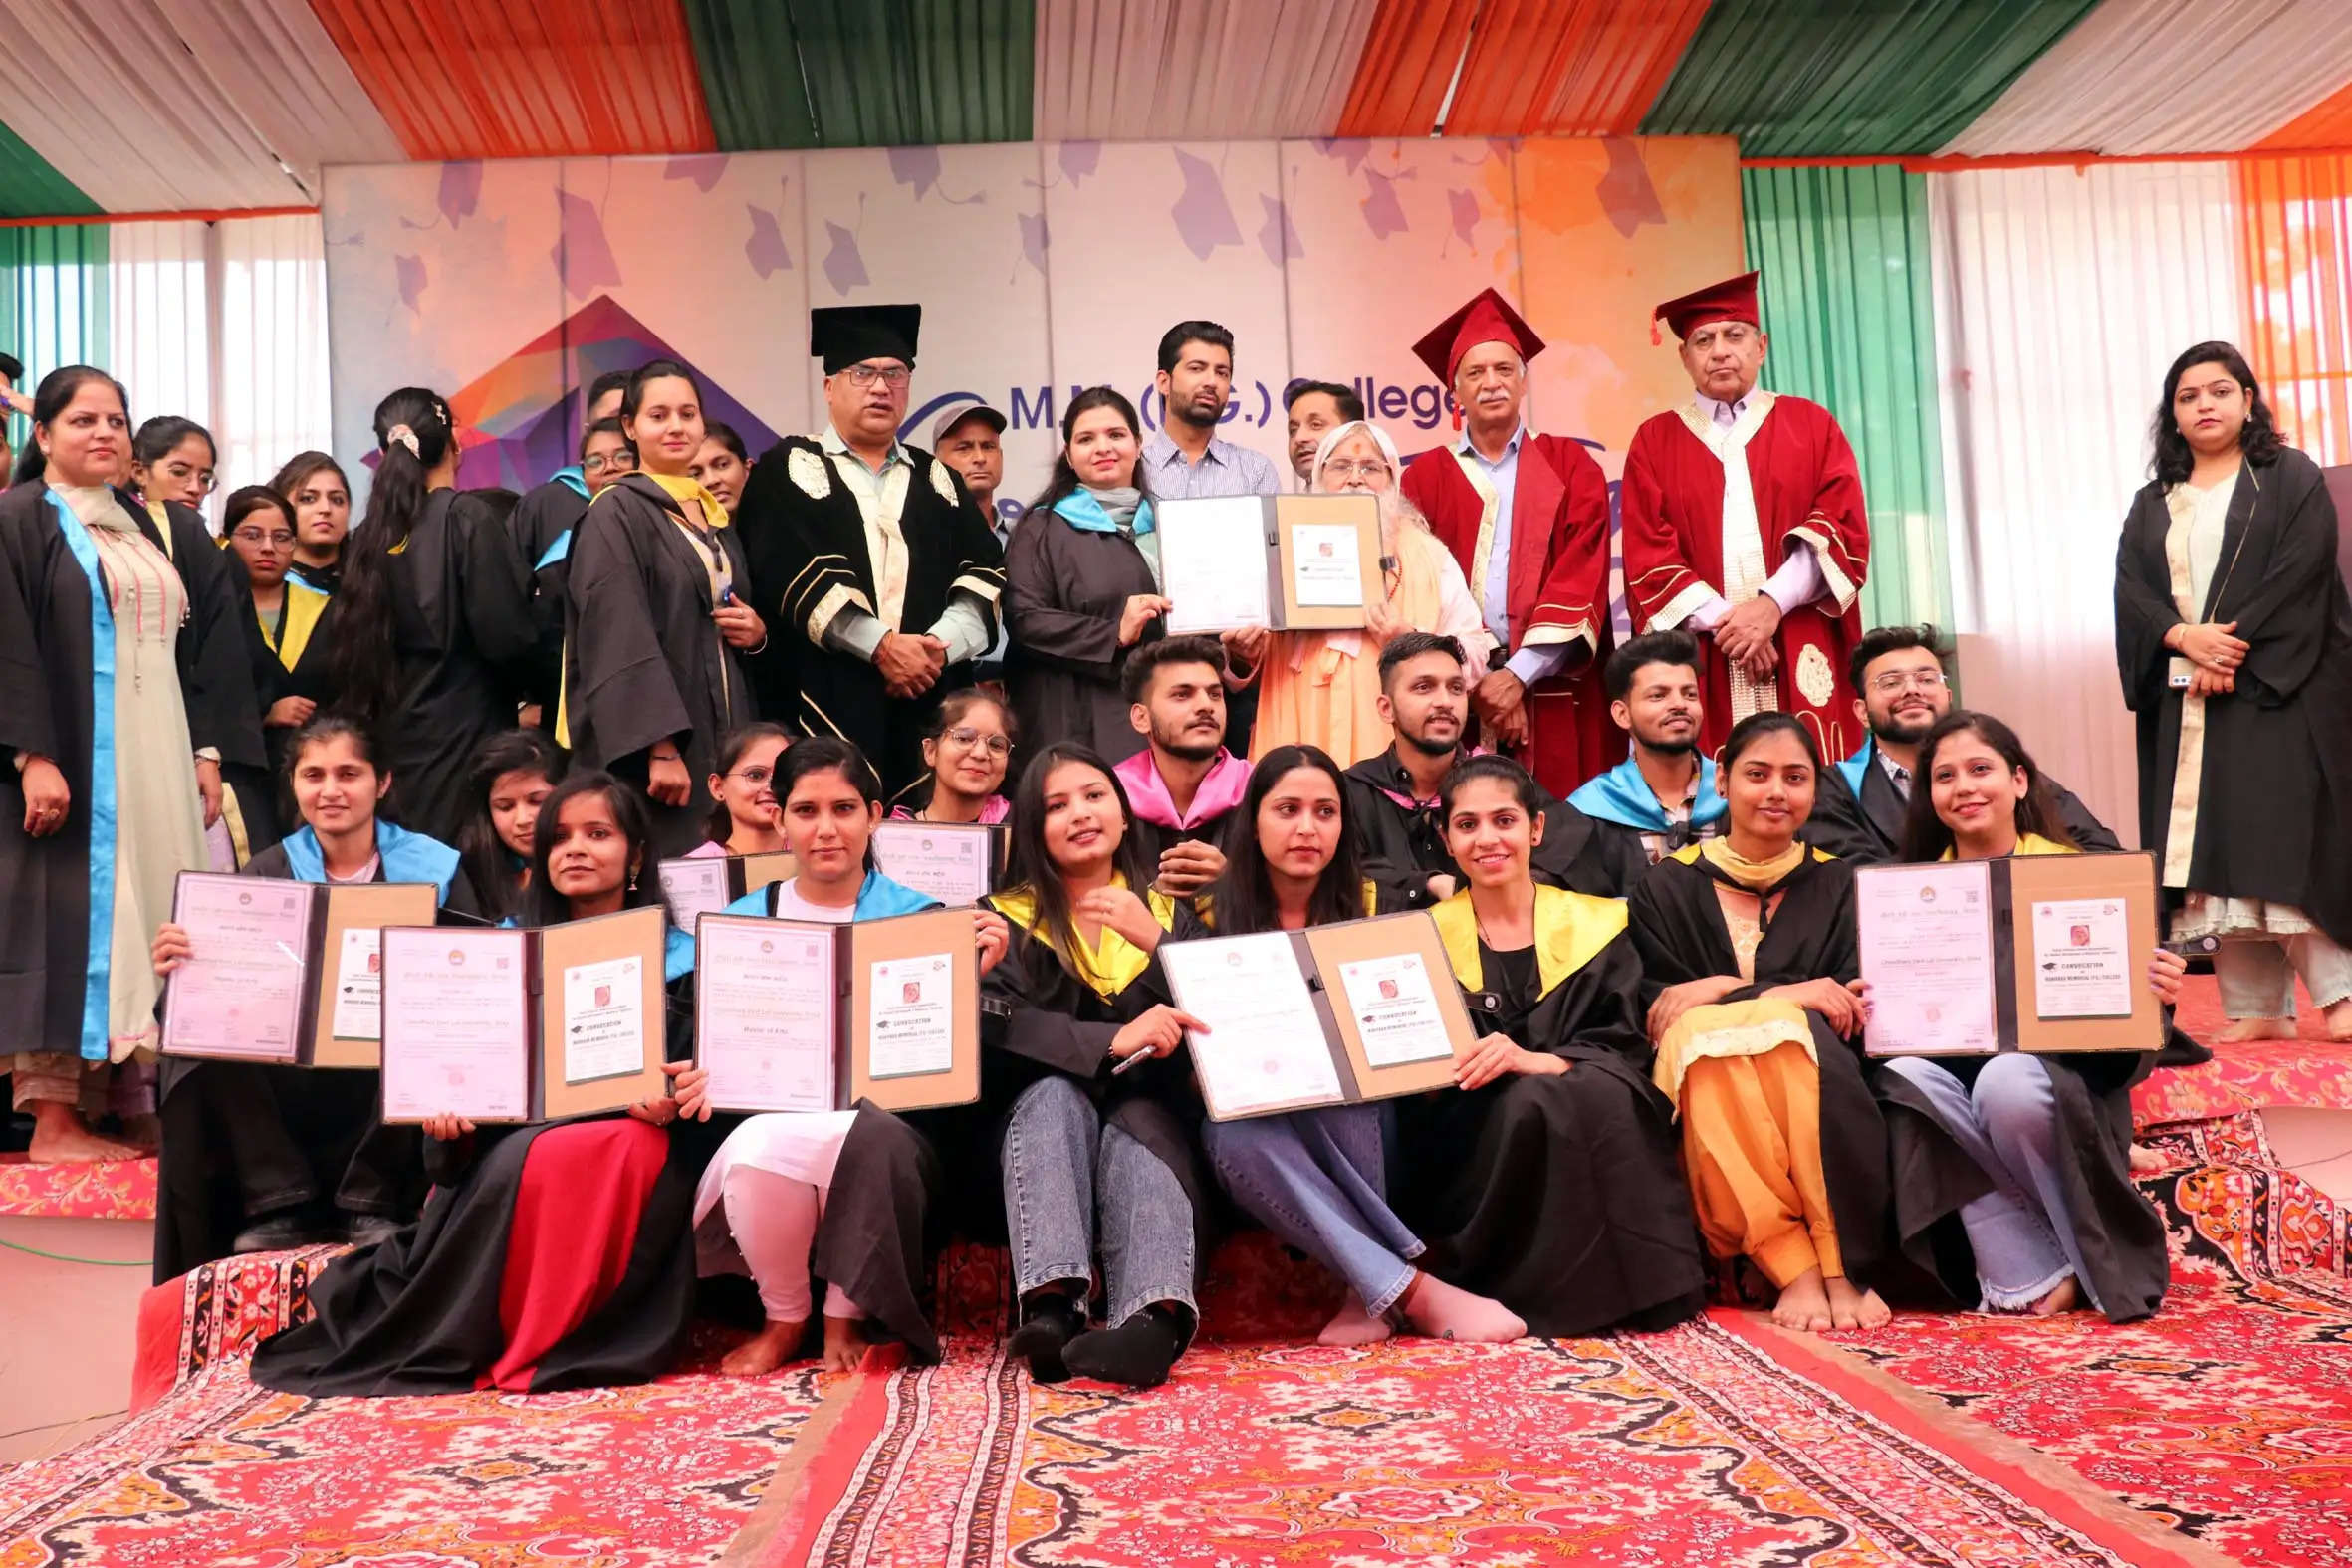  एमएम कॉलेज में दीक्षांत समारोह, स्वामी दिव्यानंद महाराज ने 600 विद्यार्थियों को प्रदान की डिग्रियां